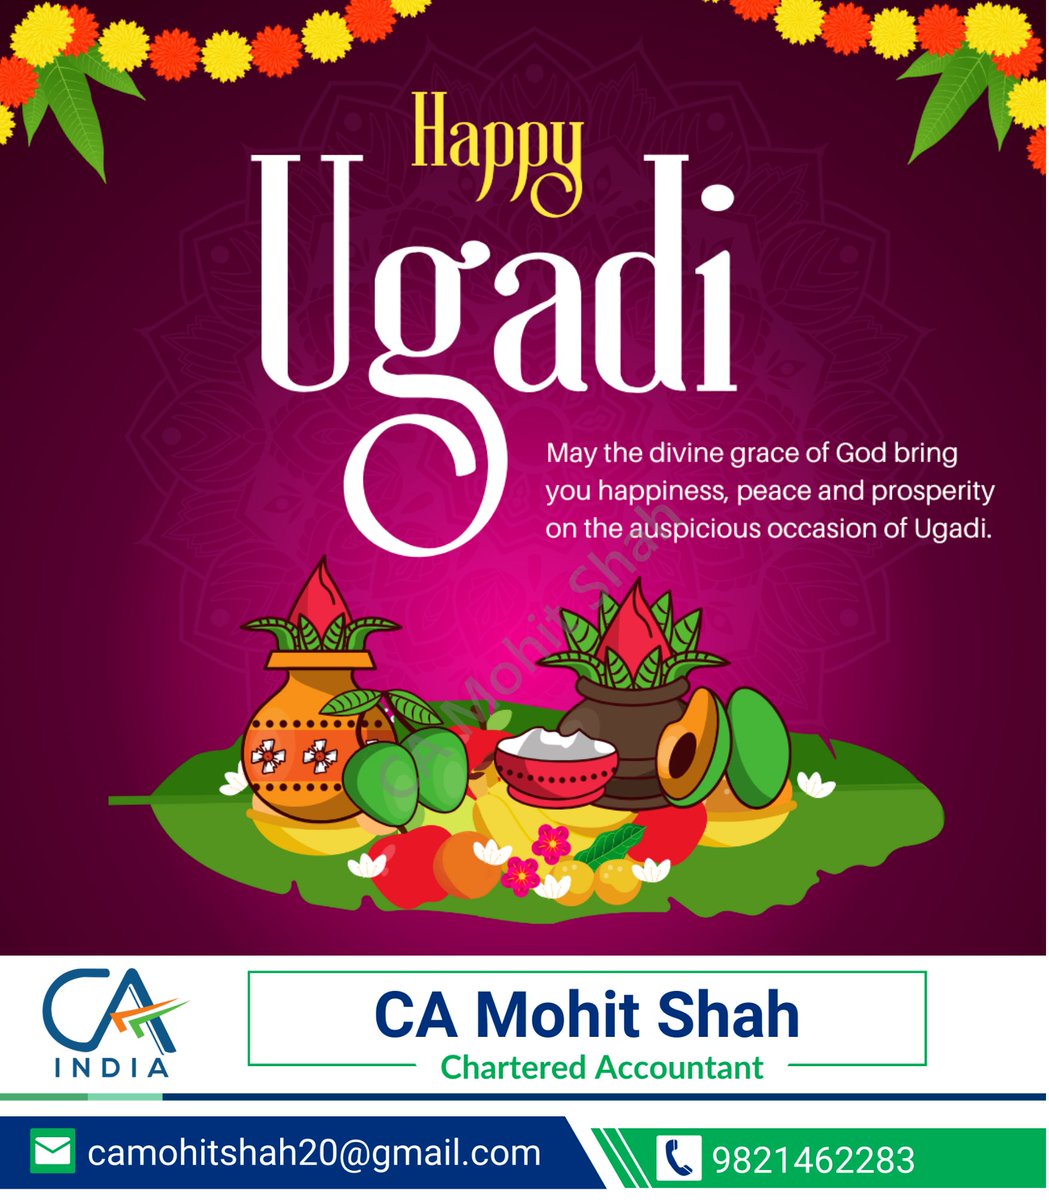 Happy Ugadi to all celebrating! May this new year bring you joy and prosperity.

 #Ugadi #Ugadi2023 #TeluguNewYear #KannadaNewYear #GudiPadwa #NewYearCelebration #UgadiFestival #FestiveSpirit #TraditionalCelebration #NewBeginnings